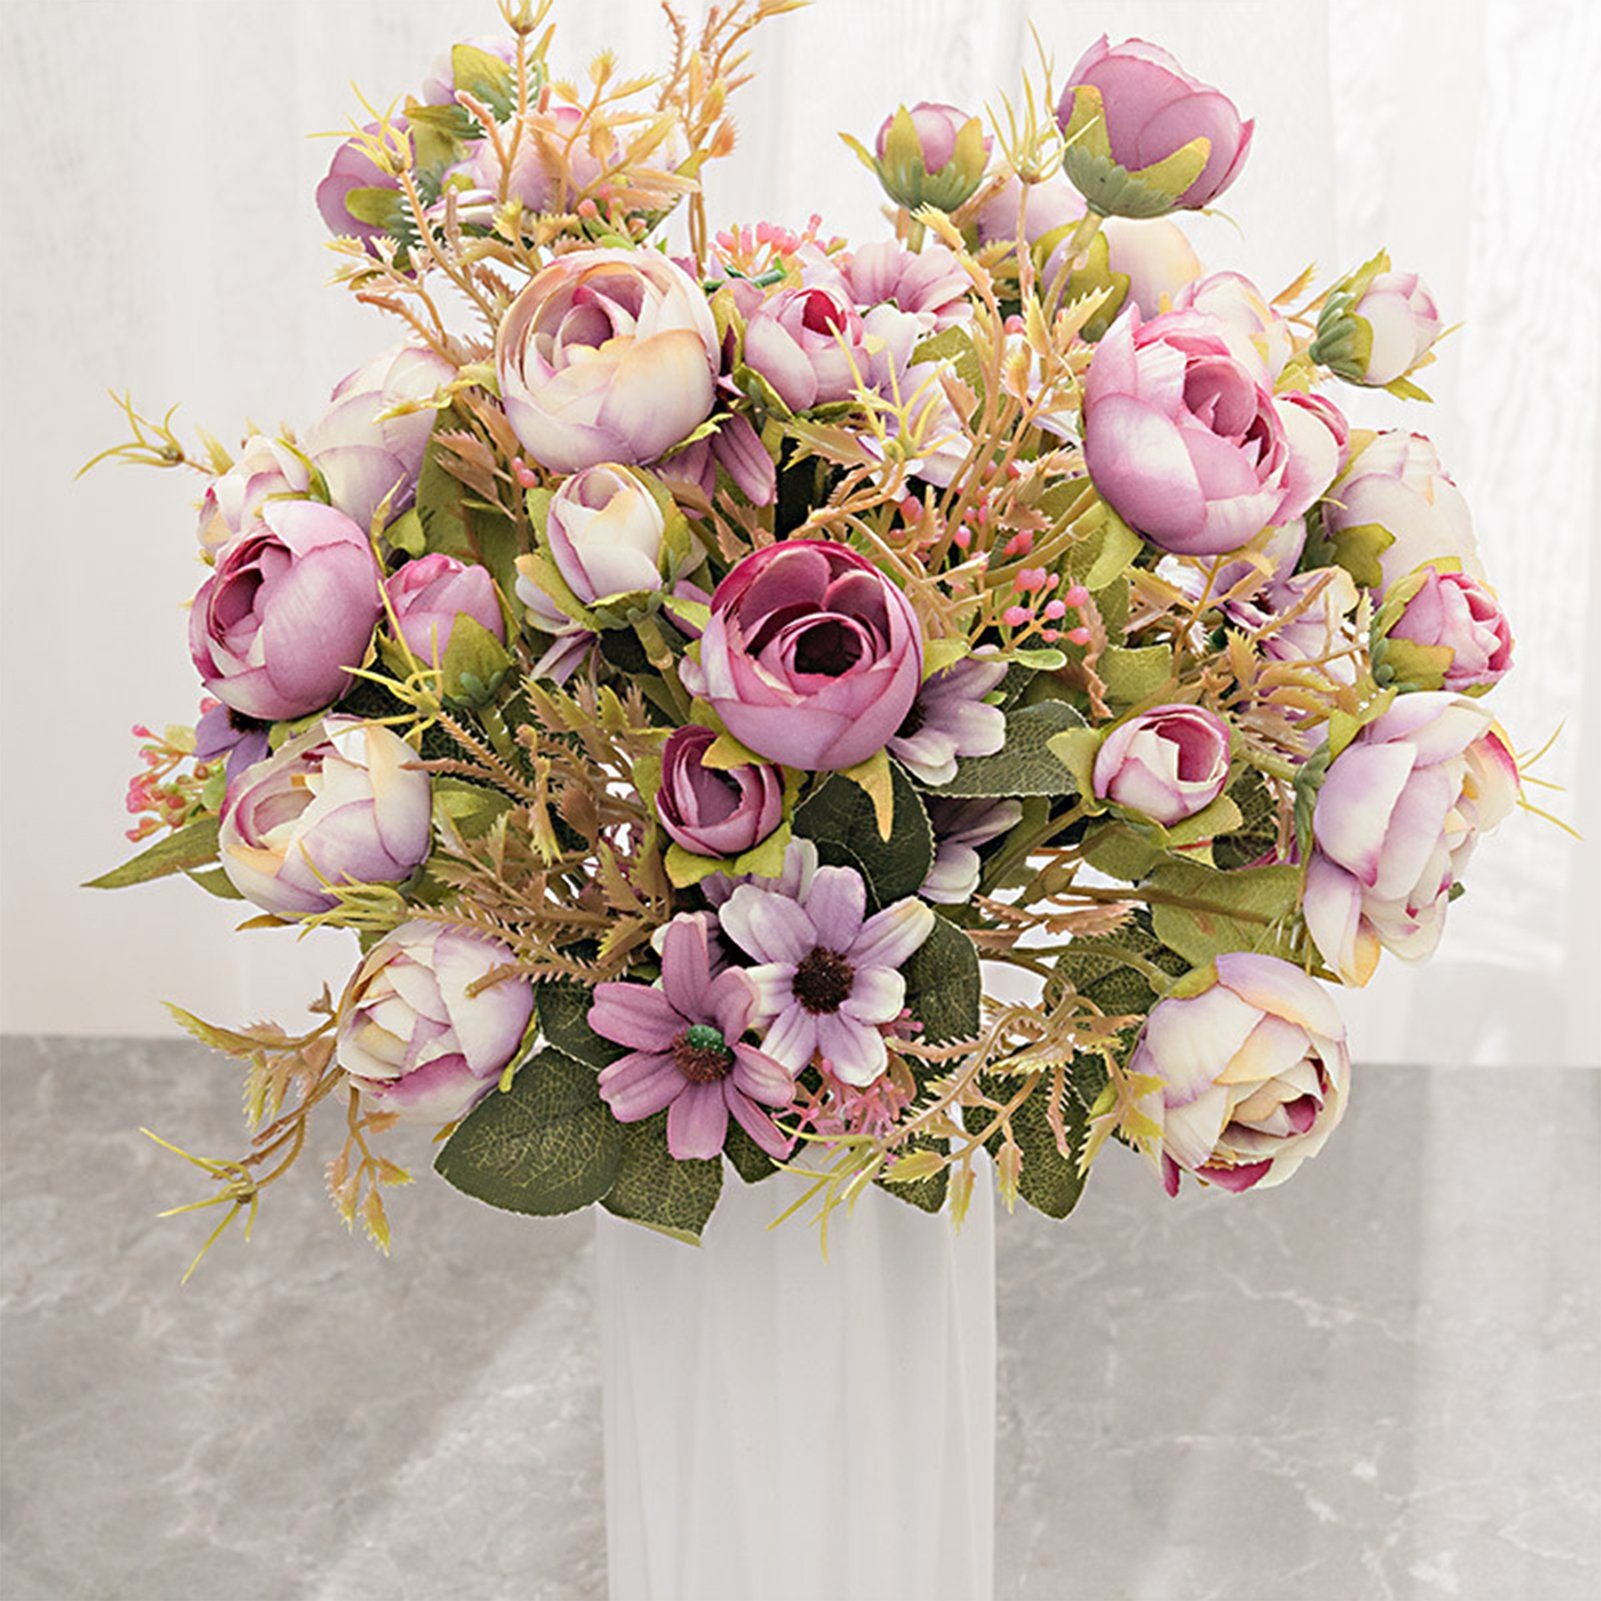 Kunstblumenstrauß Künstlicher Blumenstrauß, Modischer, Mit Kunstblumenstrauß Blusmart, Rosa Stielen, Seidenblumen